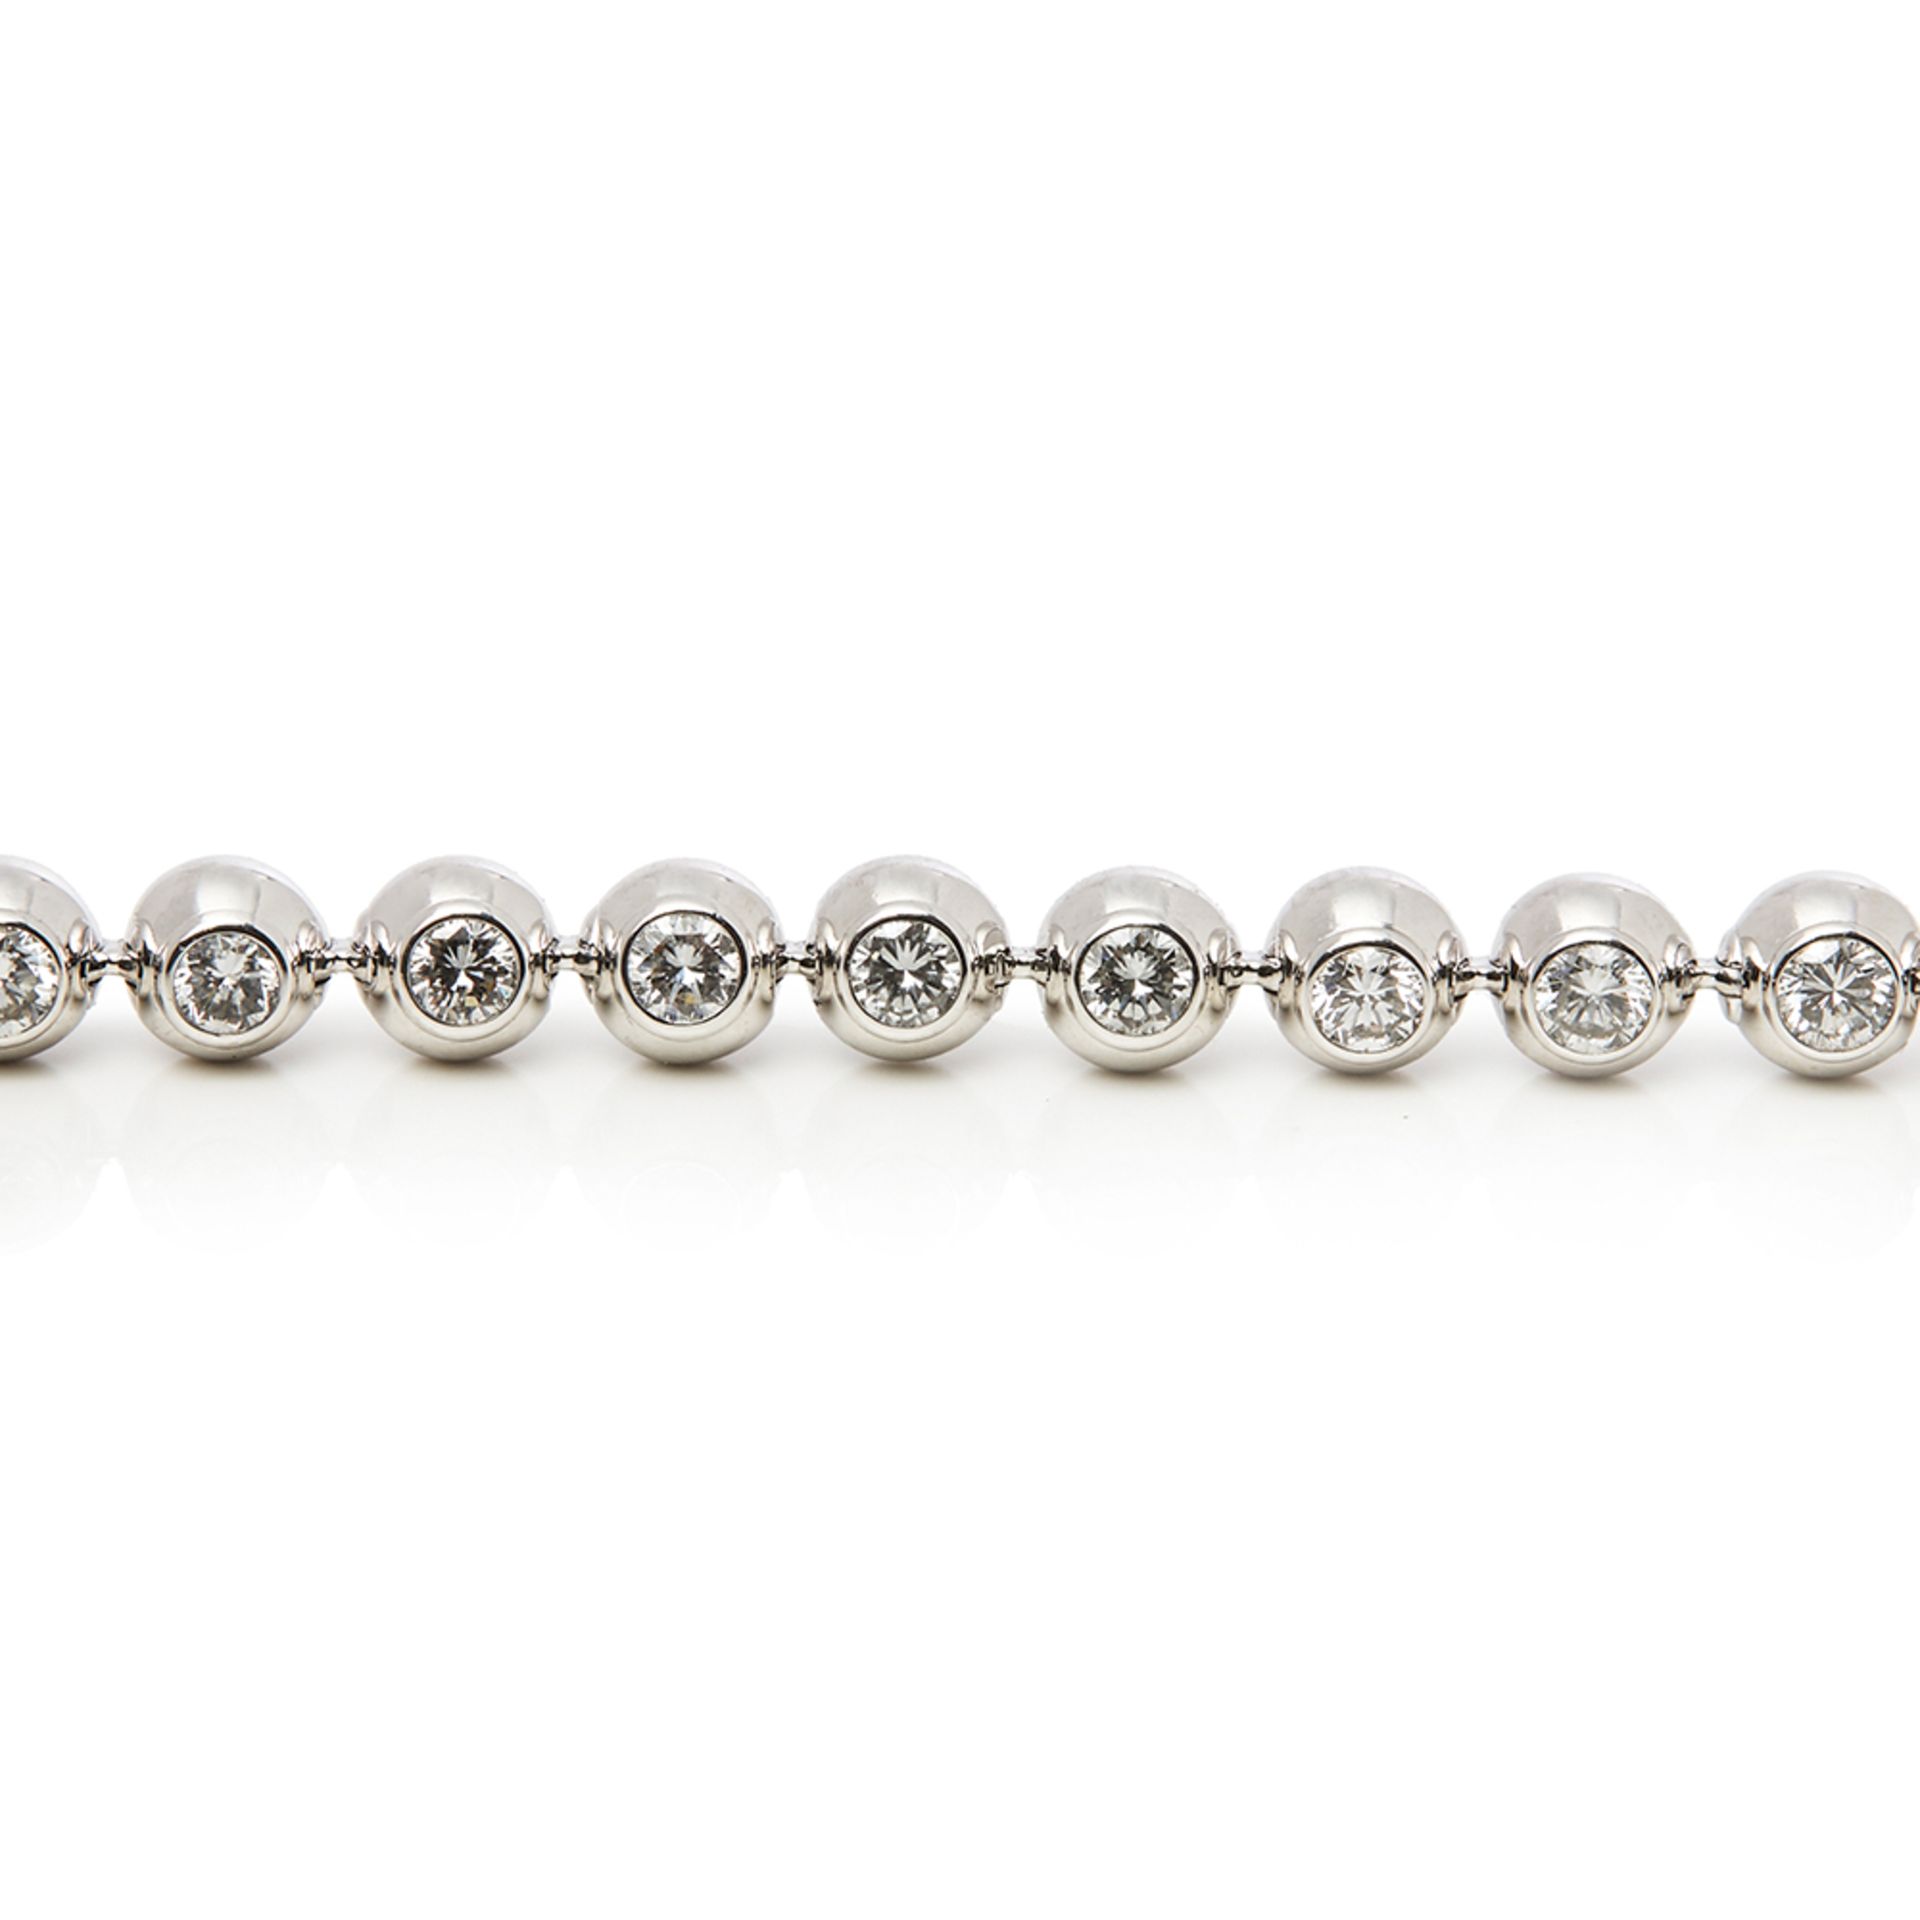 Cartier 18k White Gold Perles de Diamants Bracelet - Image 4 of 8